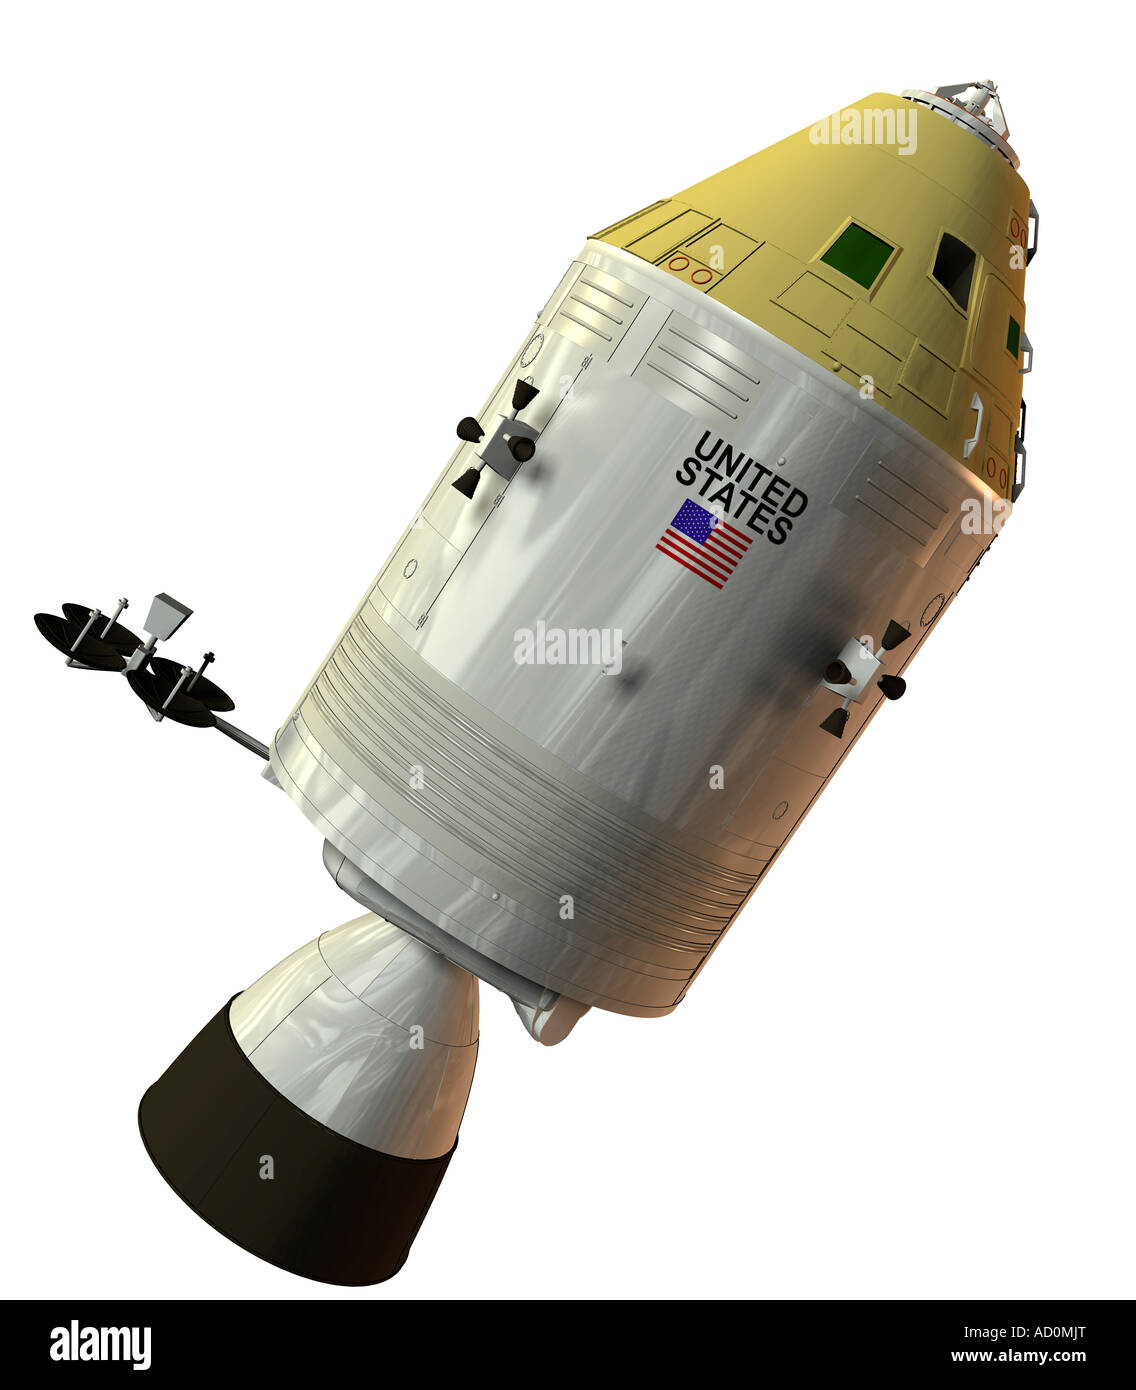 apollo spacecraft Stock Photo